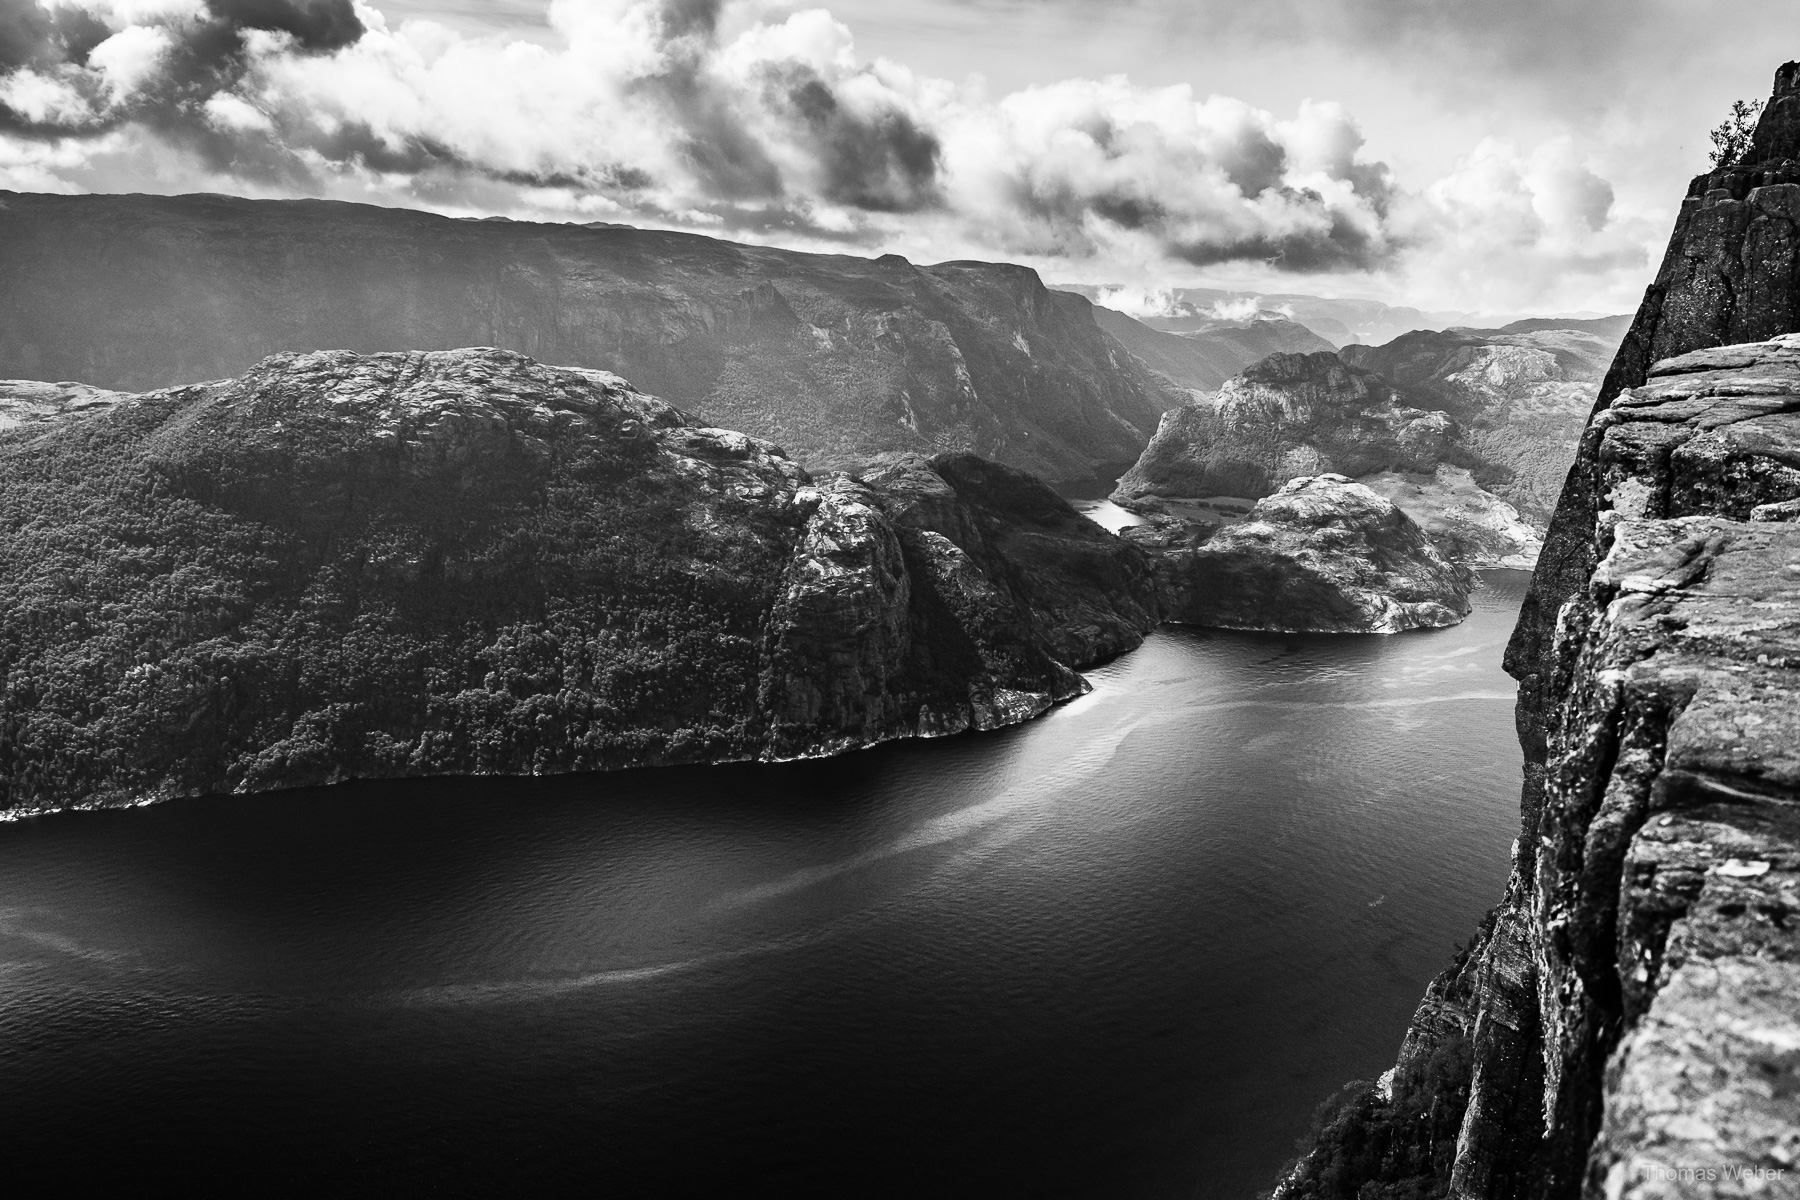 Fotograf Thomas Weber aus Oldenburg: Rundreise durch Norwegen